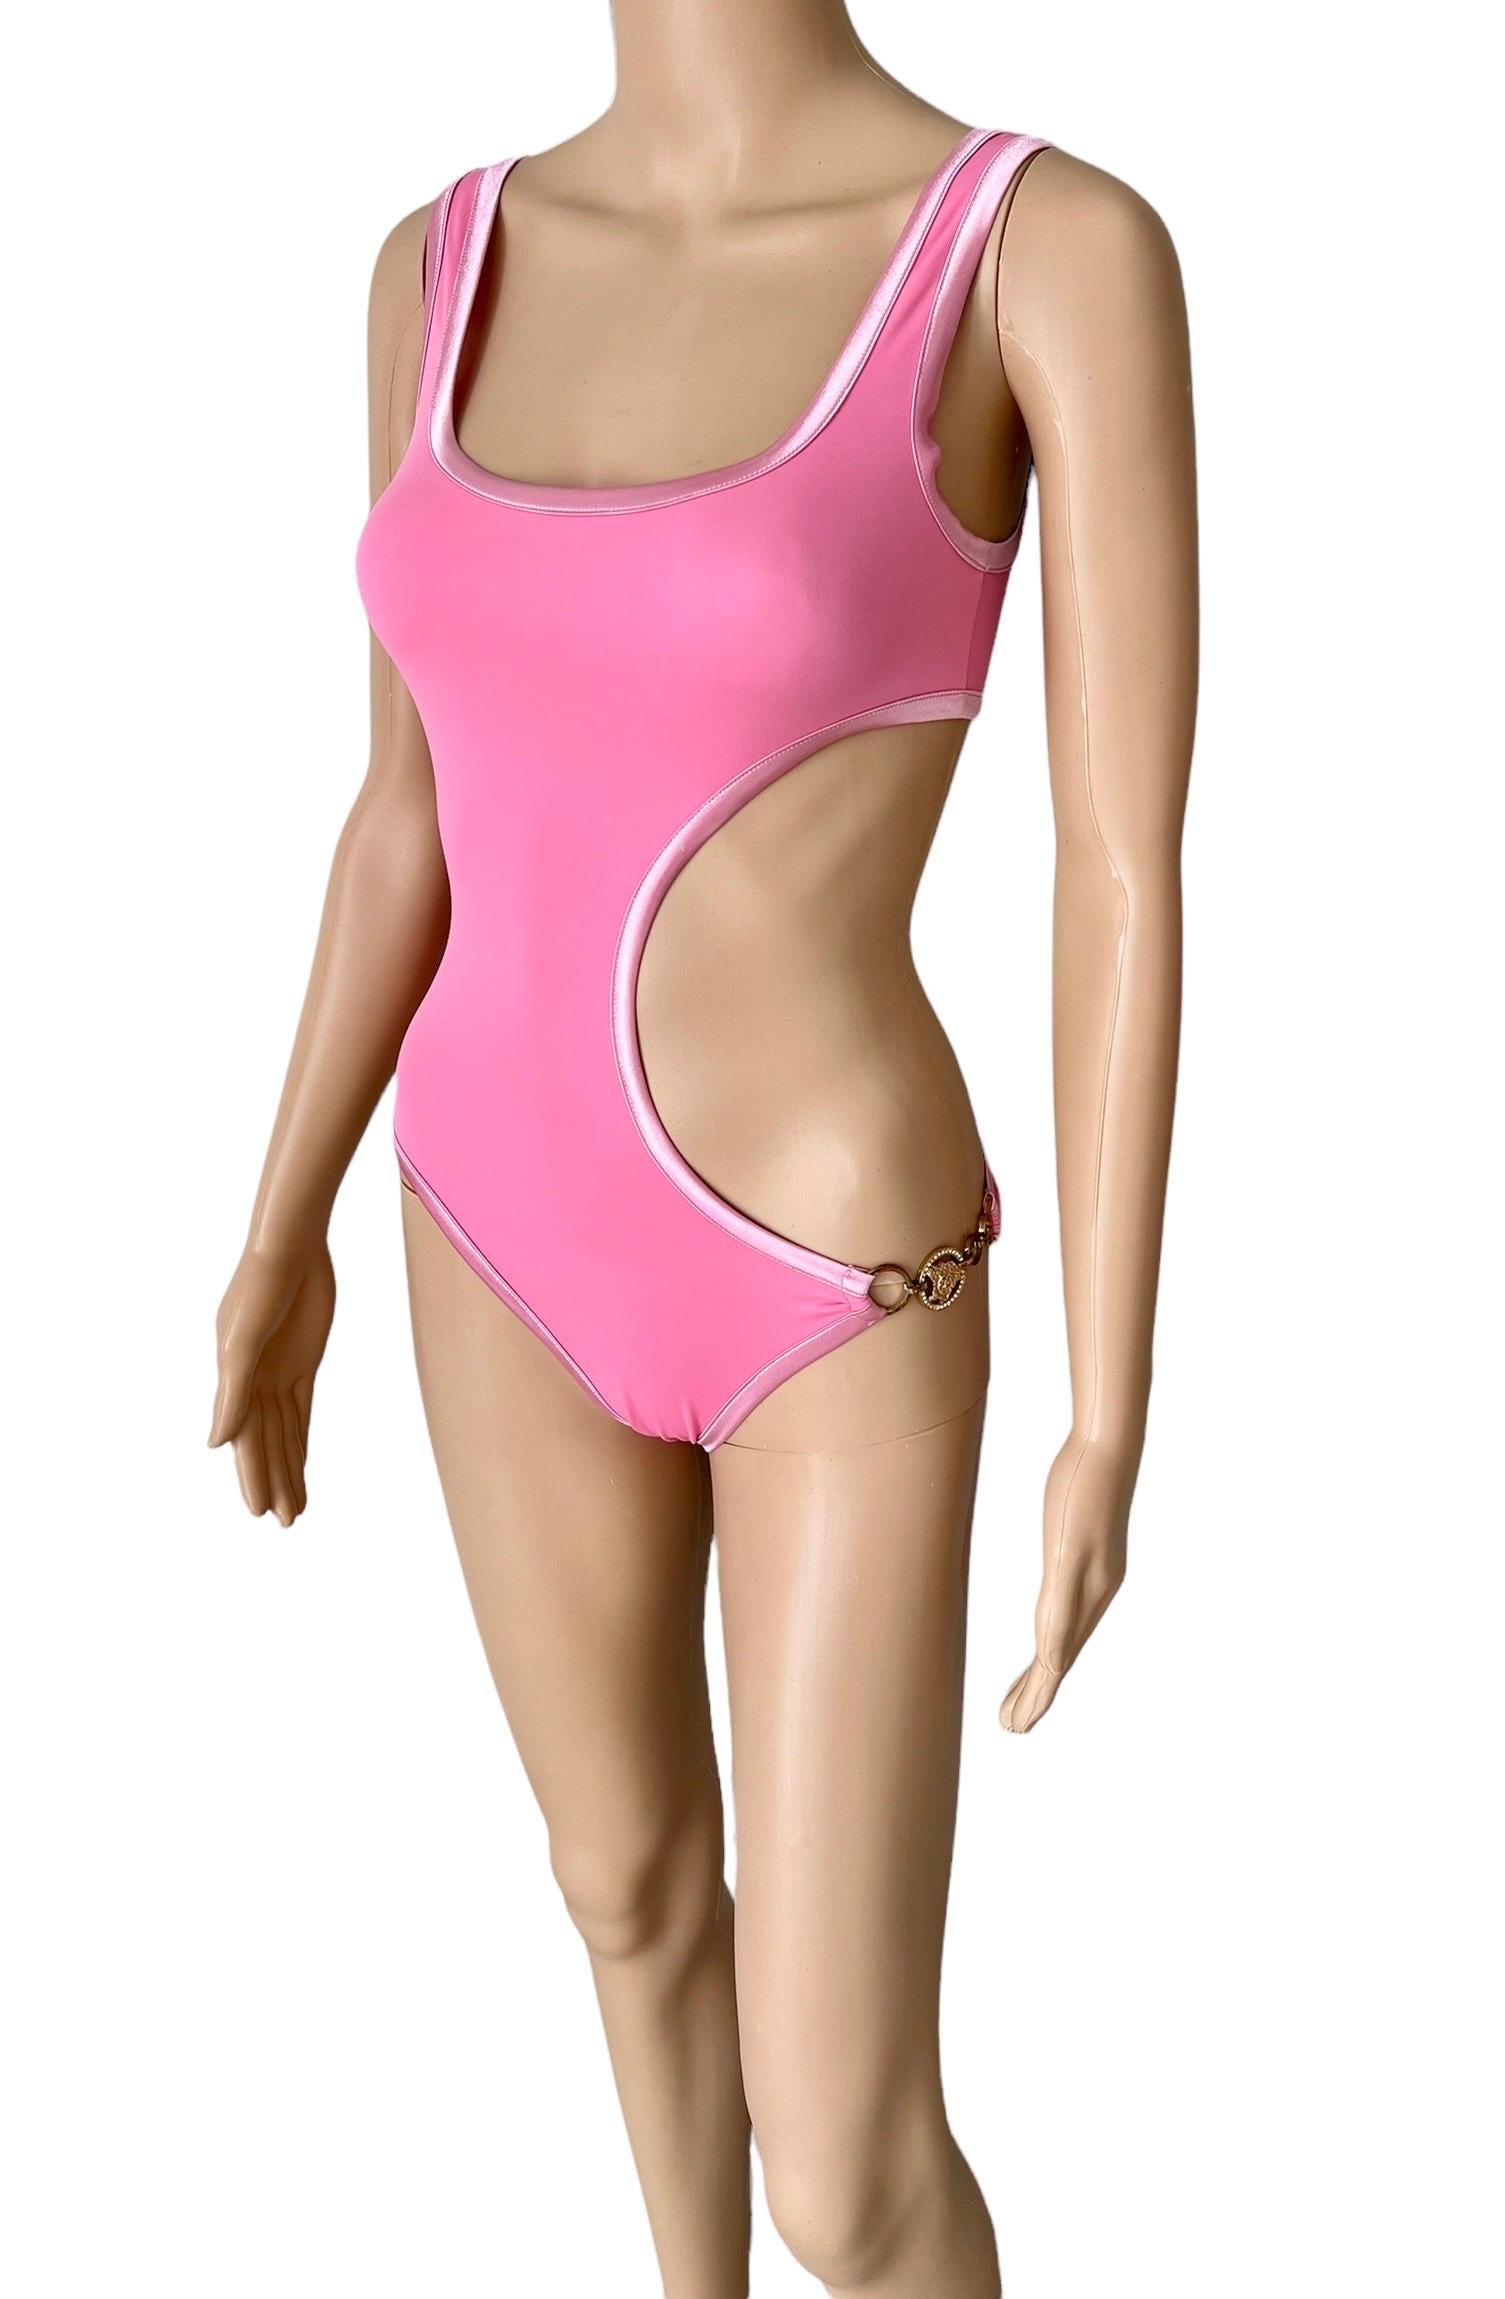 Versace S/S 2005 Ausgeschnittener, kristallverzierter Logo-Bodysuit, einteilig, Badeanzug, IT 42

Ausgezeichneter Zustand